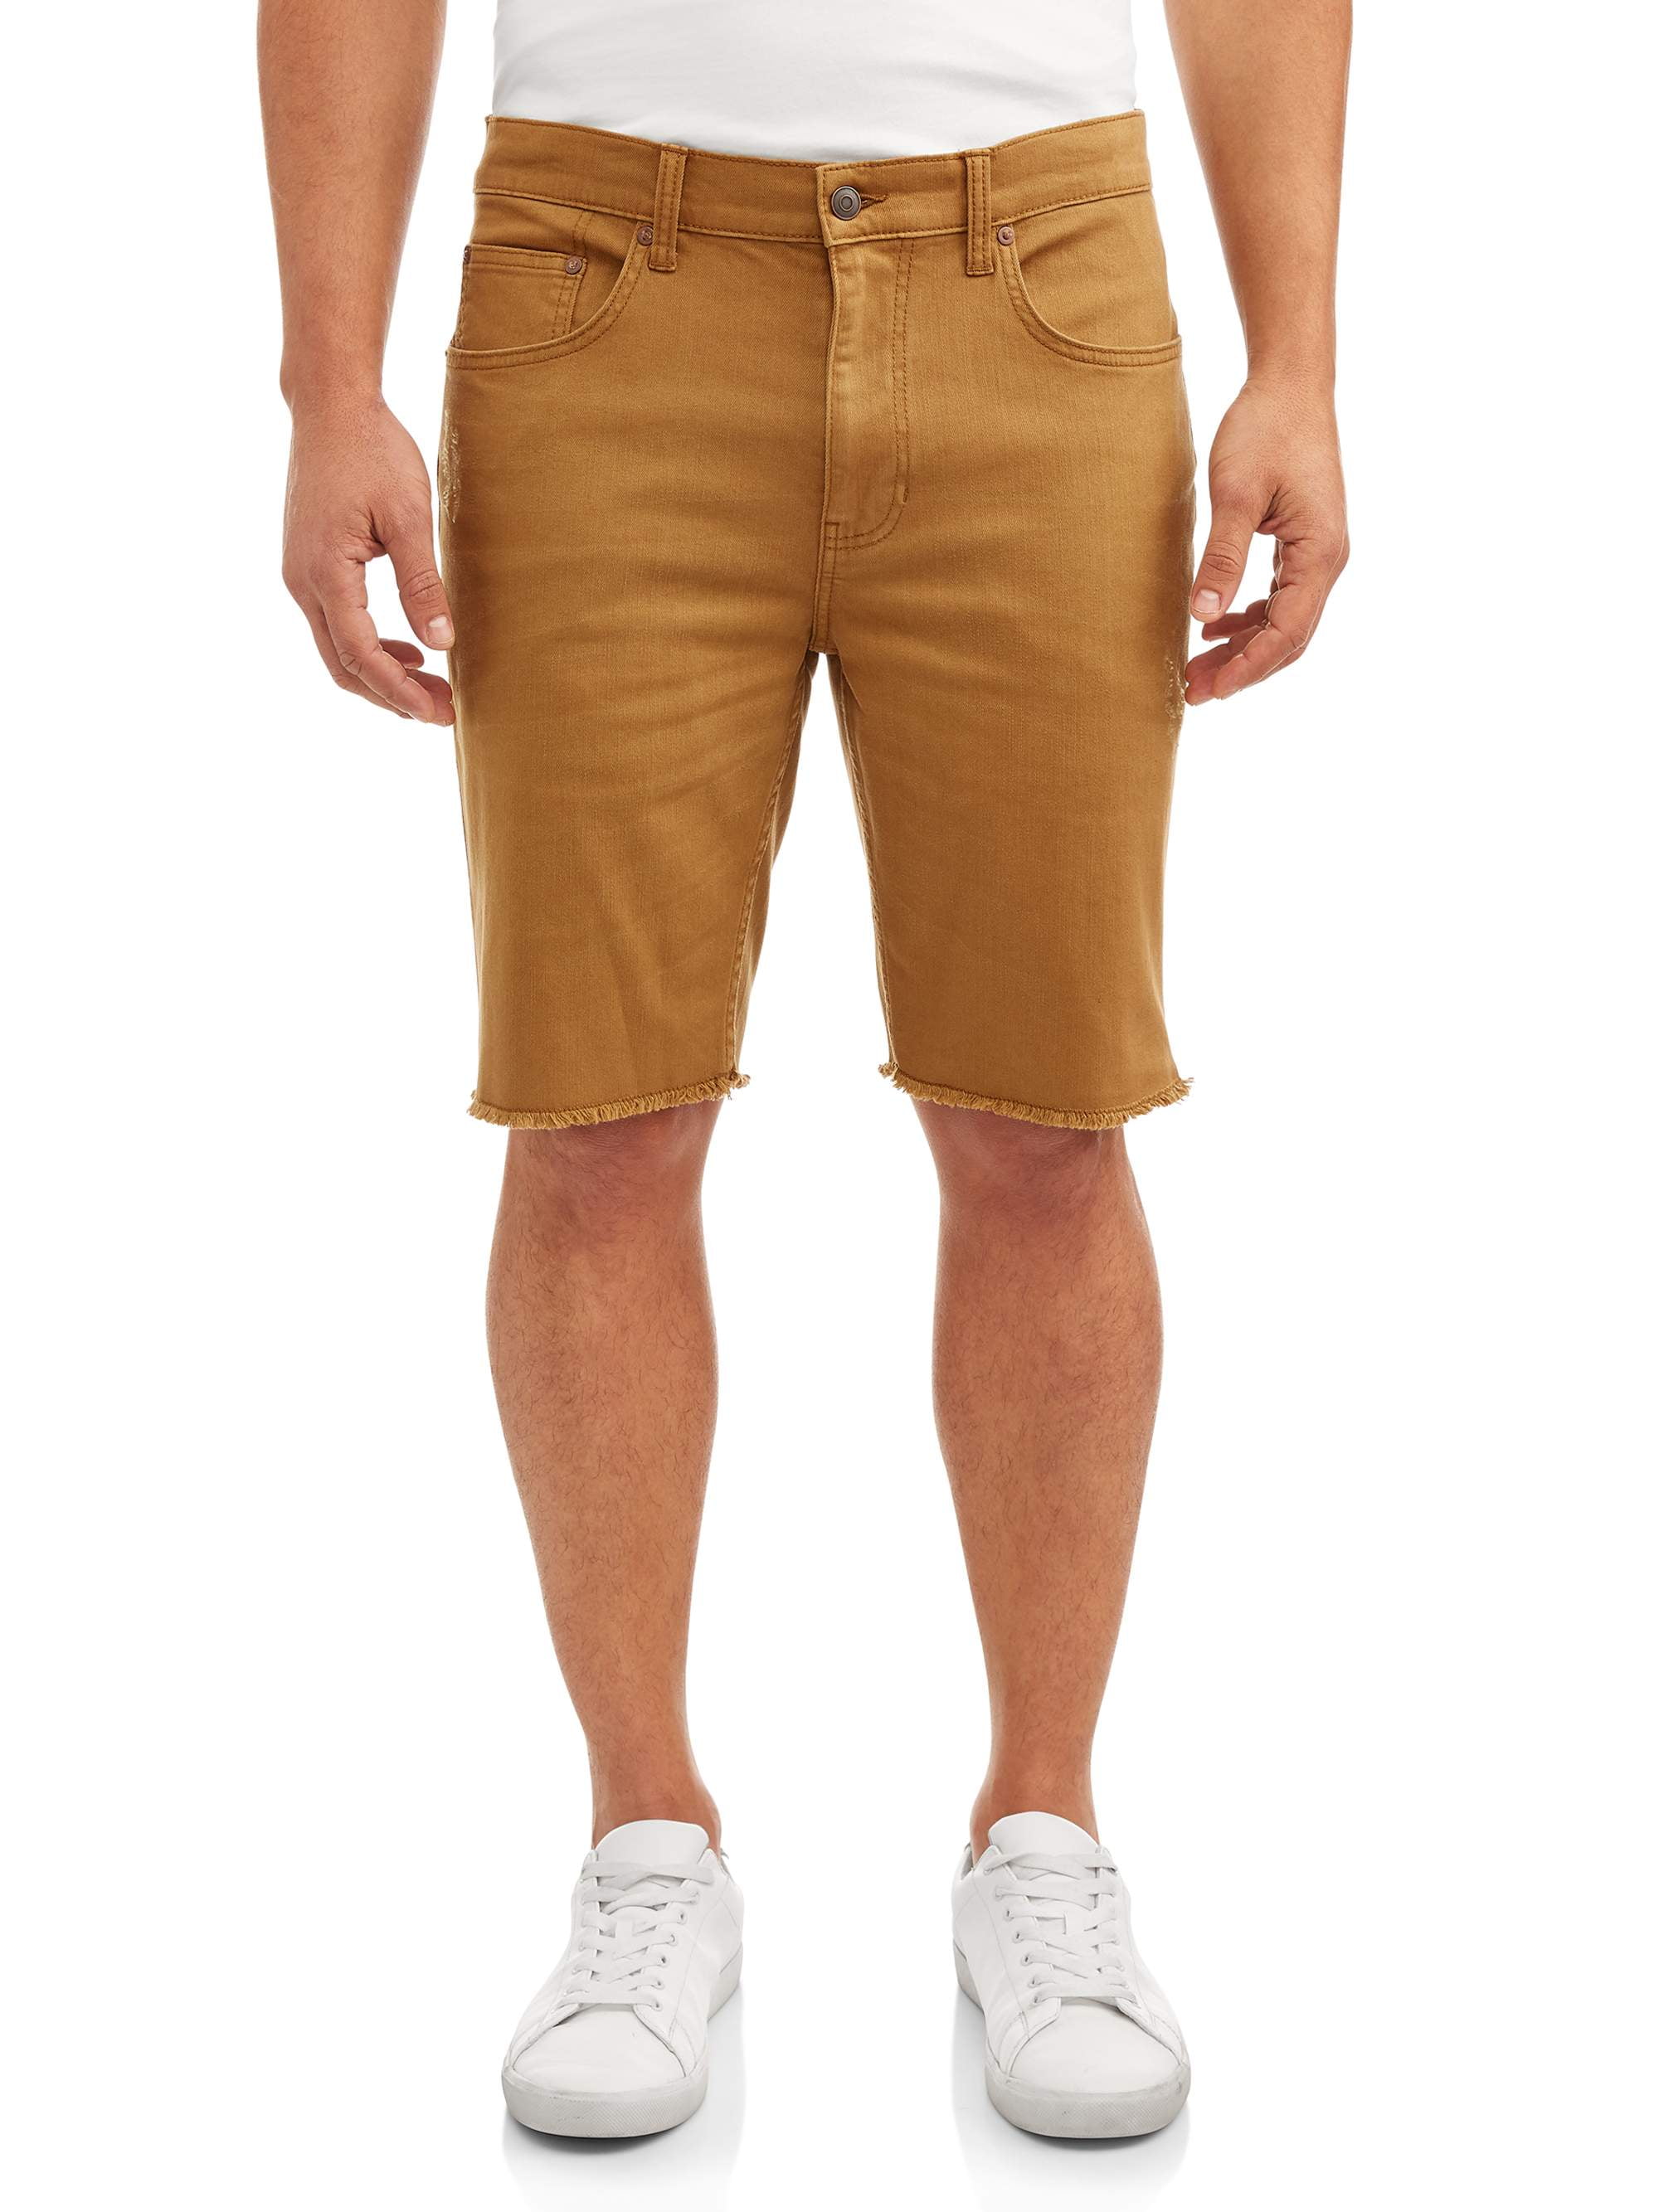 orange denim shorts